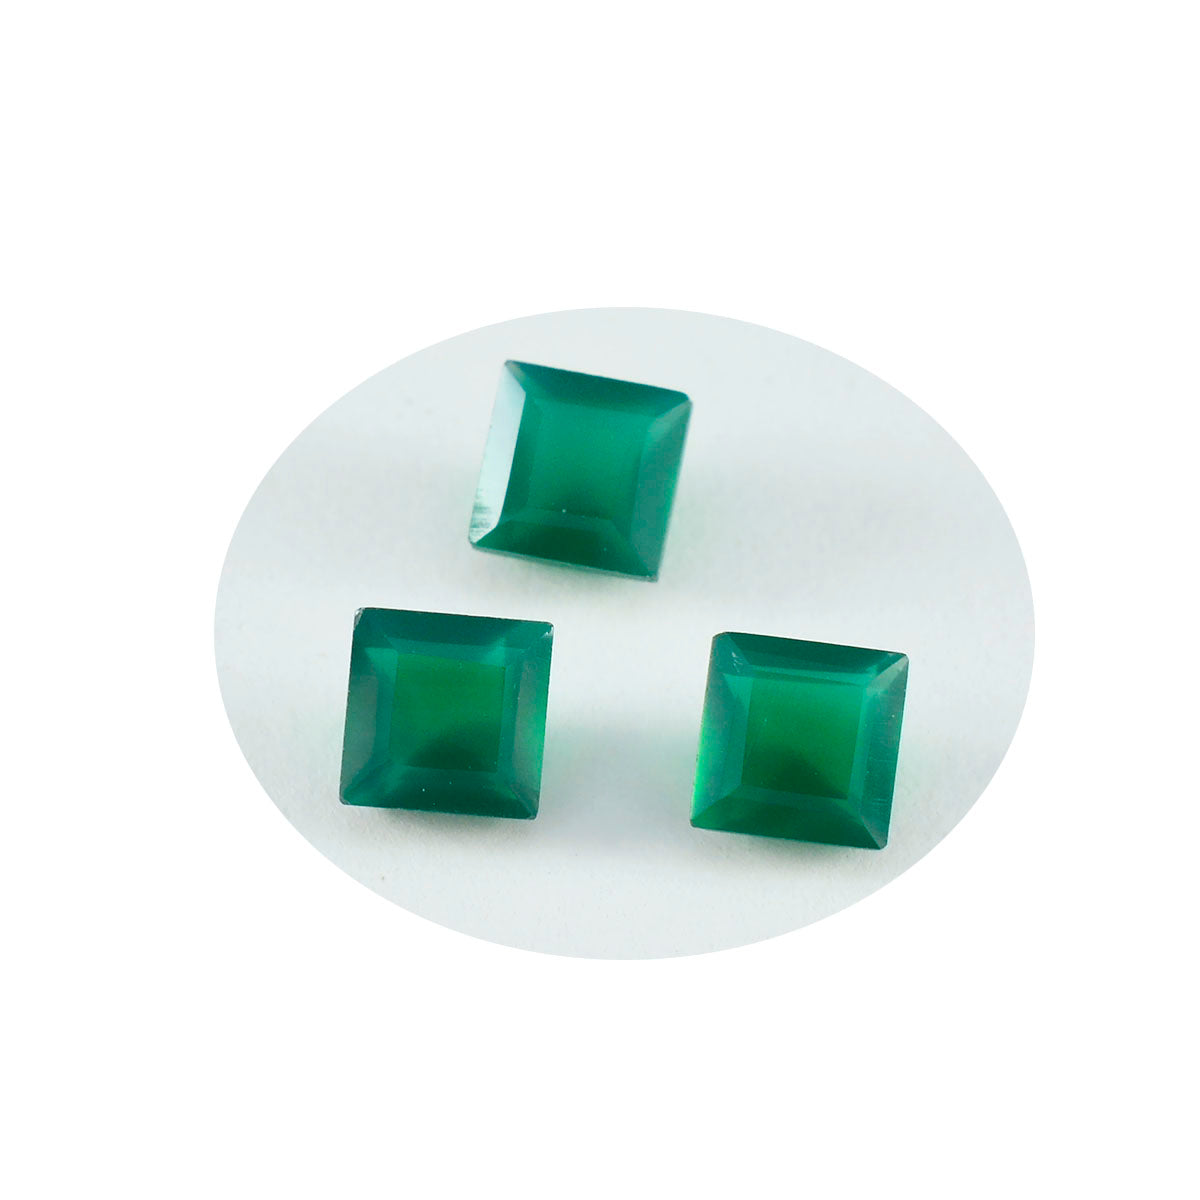 Riyogems 1PC echte groene onyx gefacetteerde 8x8 mm vierkante vorm mooie kwaliteitssteen